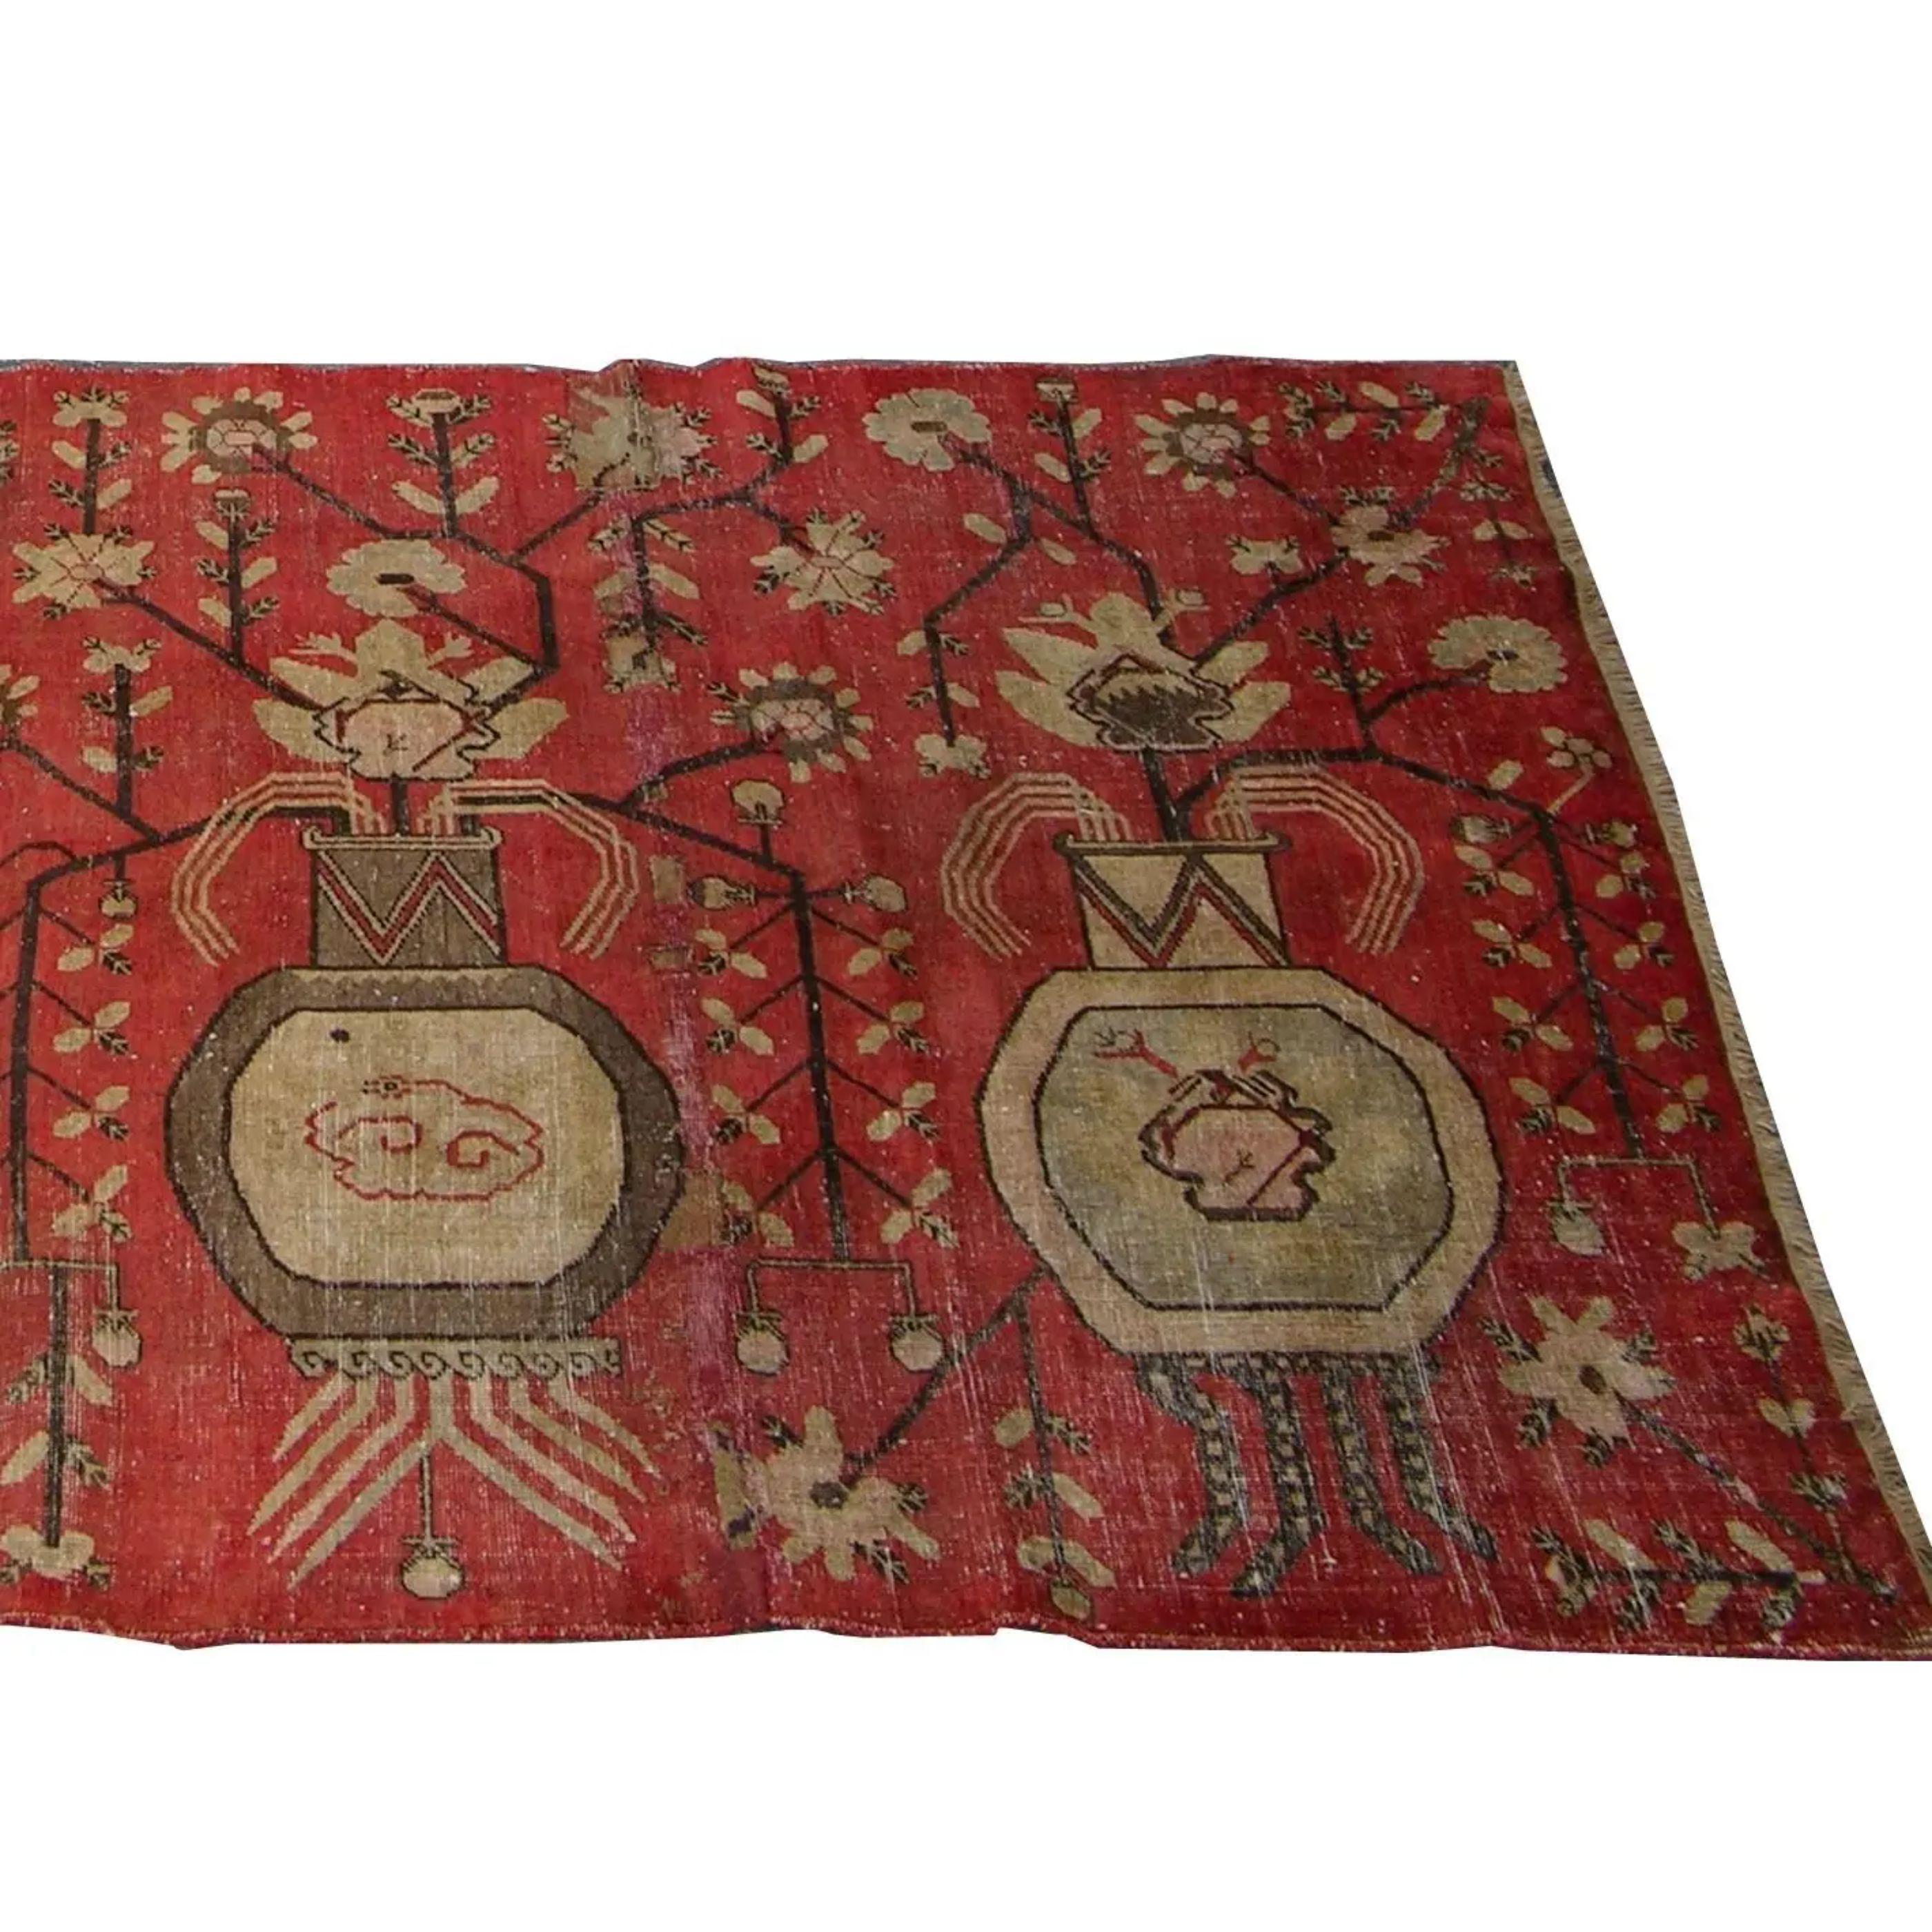 Zum Verkauf steht ein antiker Khotan-Samarkand-Teppich, circa 1900.